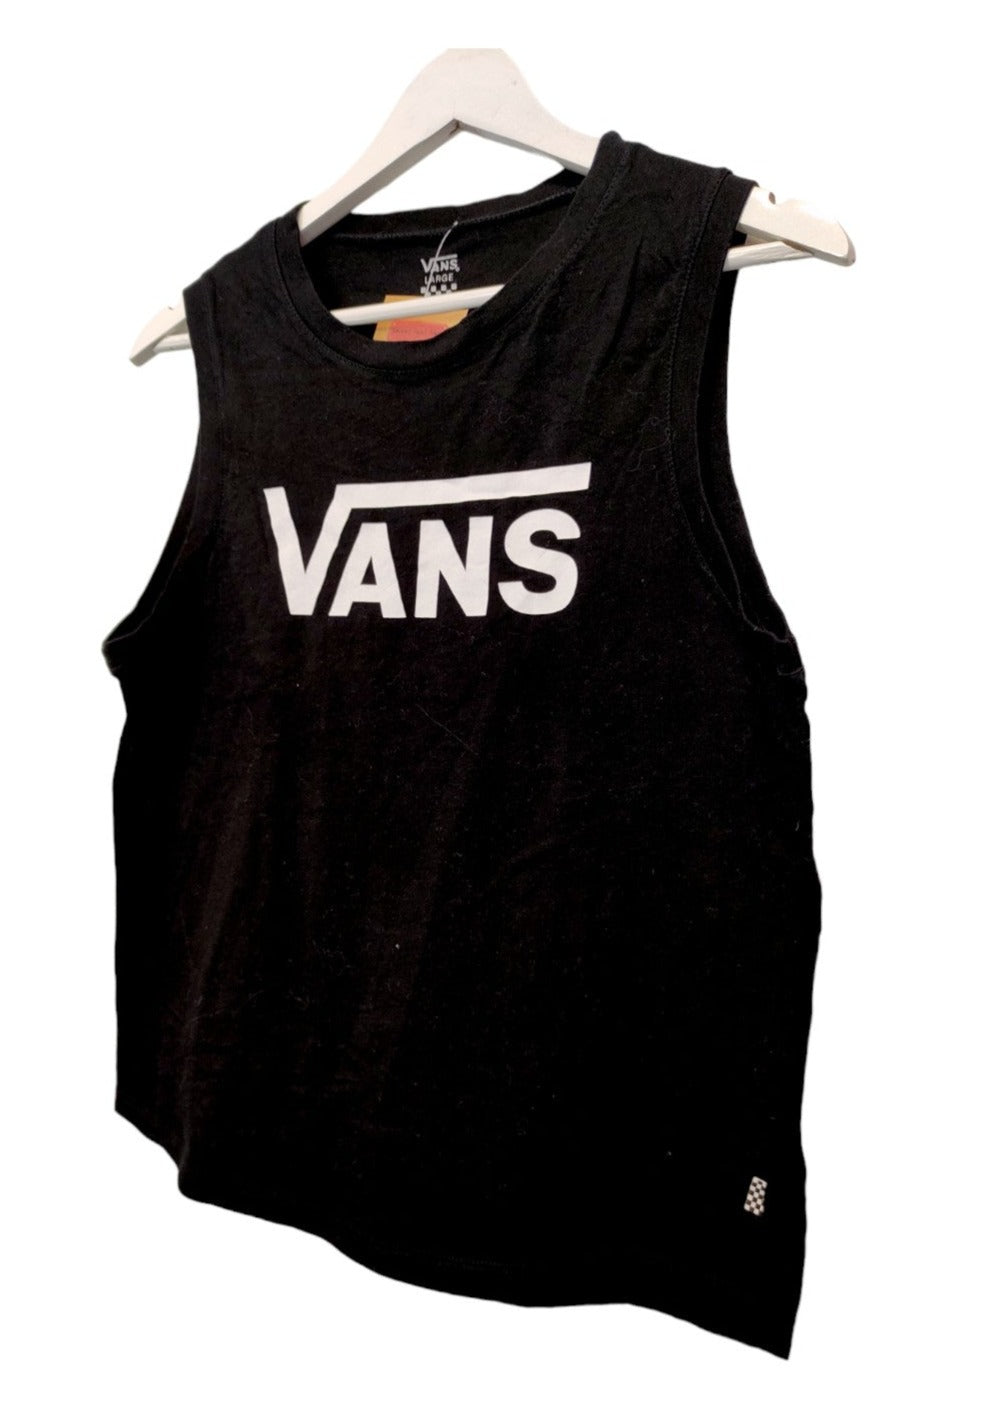 Αμάνικη, Γυναικεία Αθλητική Μπλούζα VANS σε Μαύρο Χρώμα (Medium)